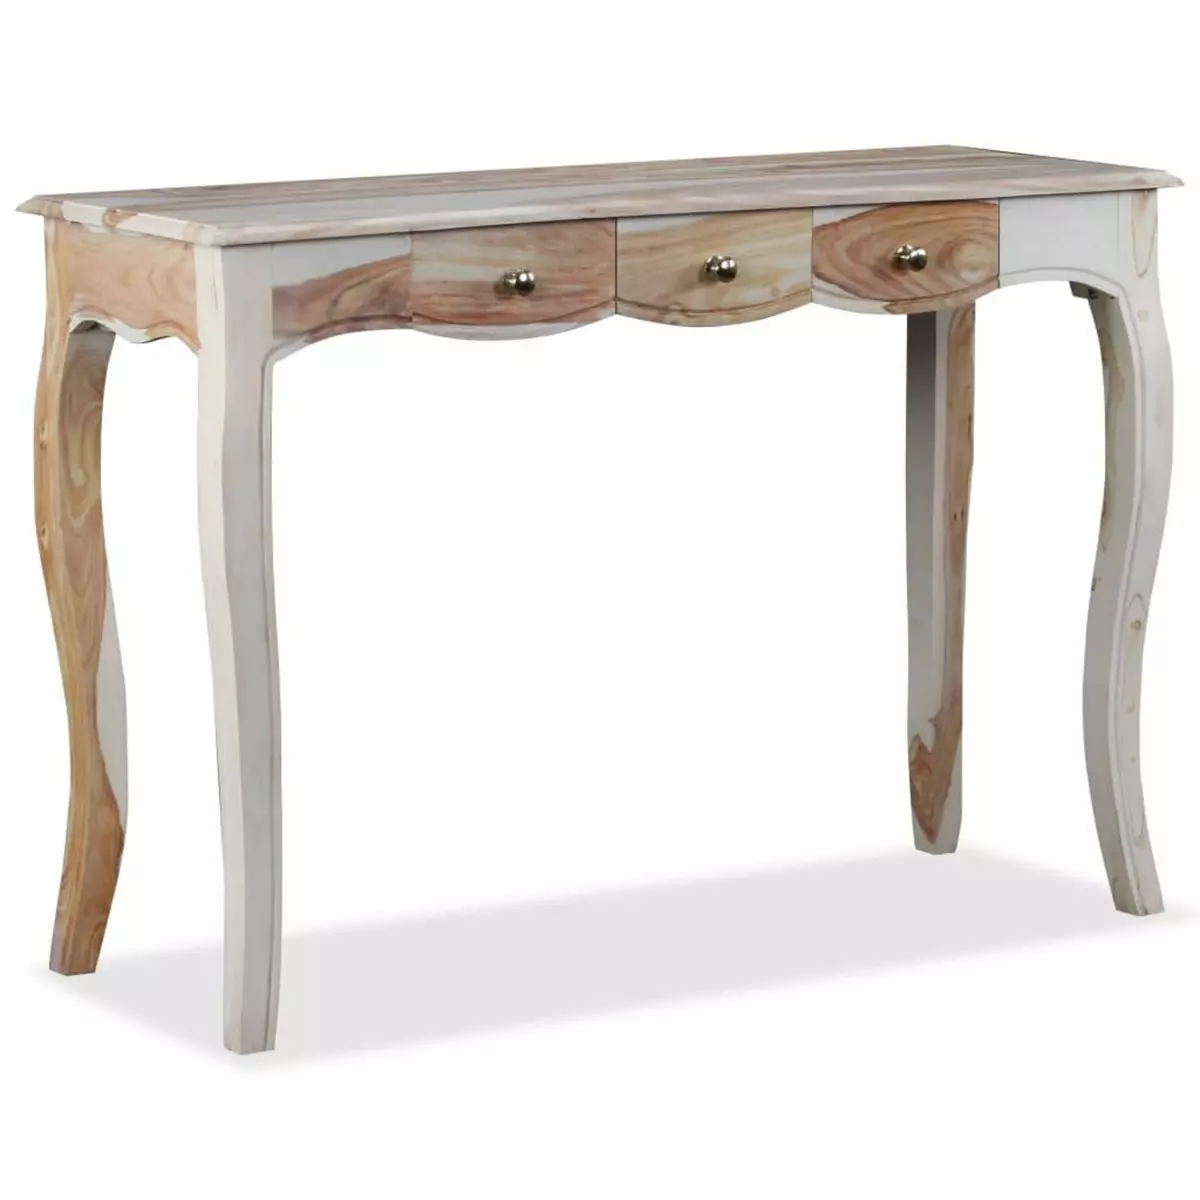 VIDAXL Table console et 3 tiroirs Bois de Sesham massif 110x40x76 cm